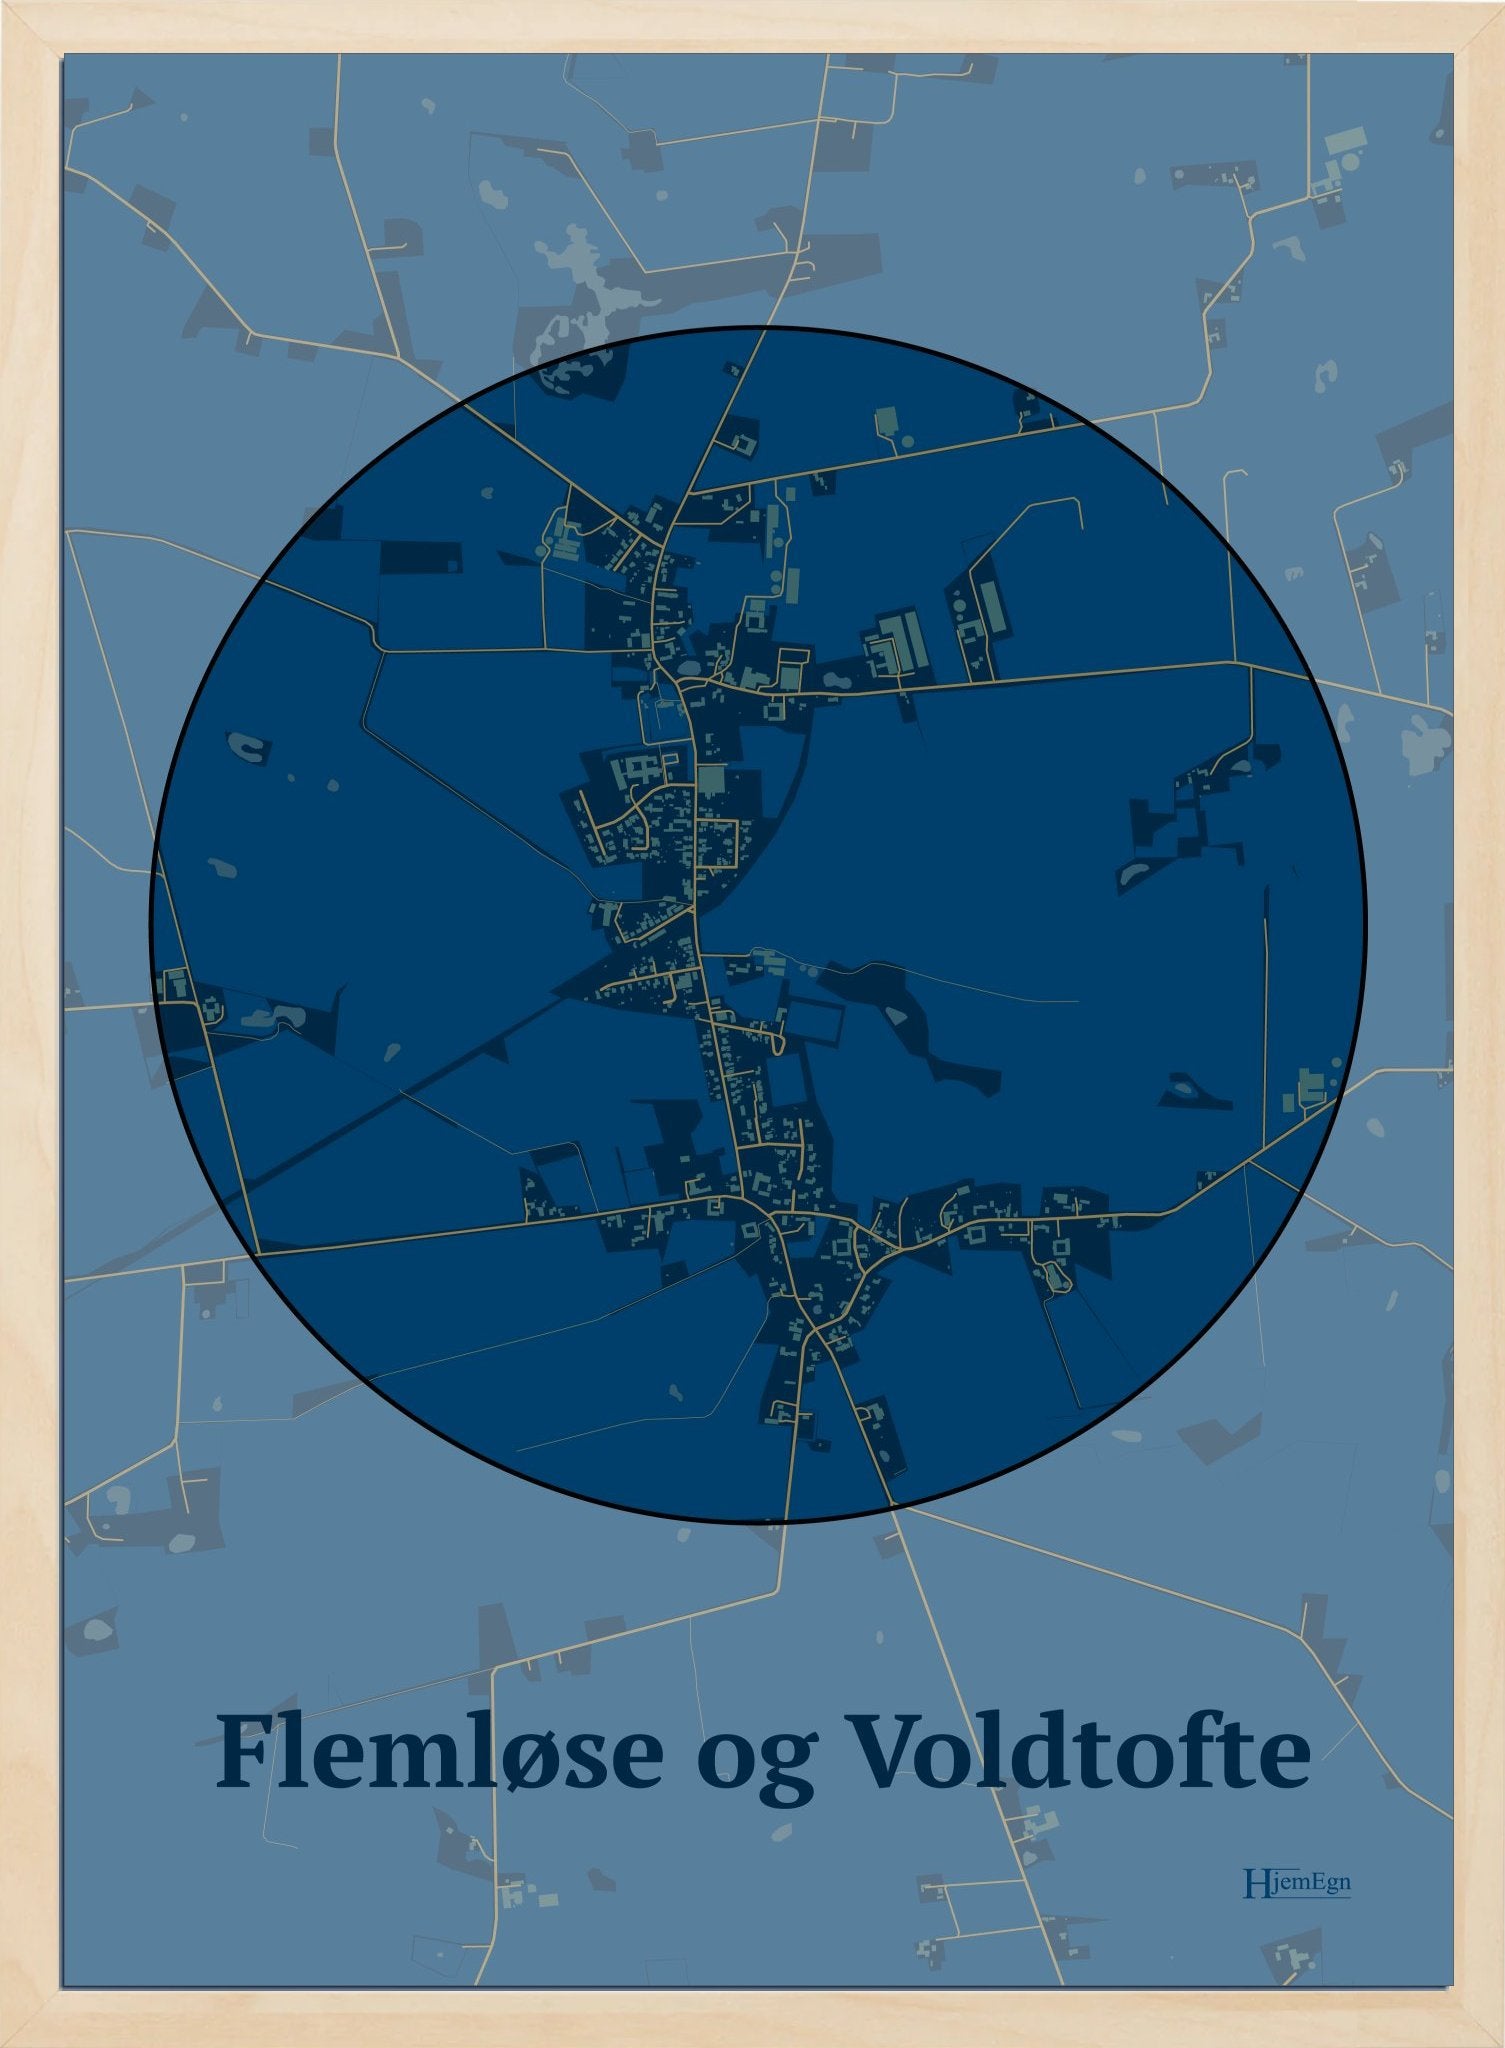 Flemløse & Voldtofte plakat i farve mørk blå og HjemEgn.dk design centrum. Design bykort for Flemløse & Voldtofte